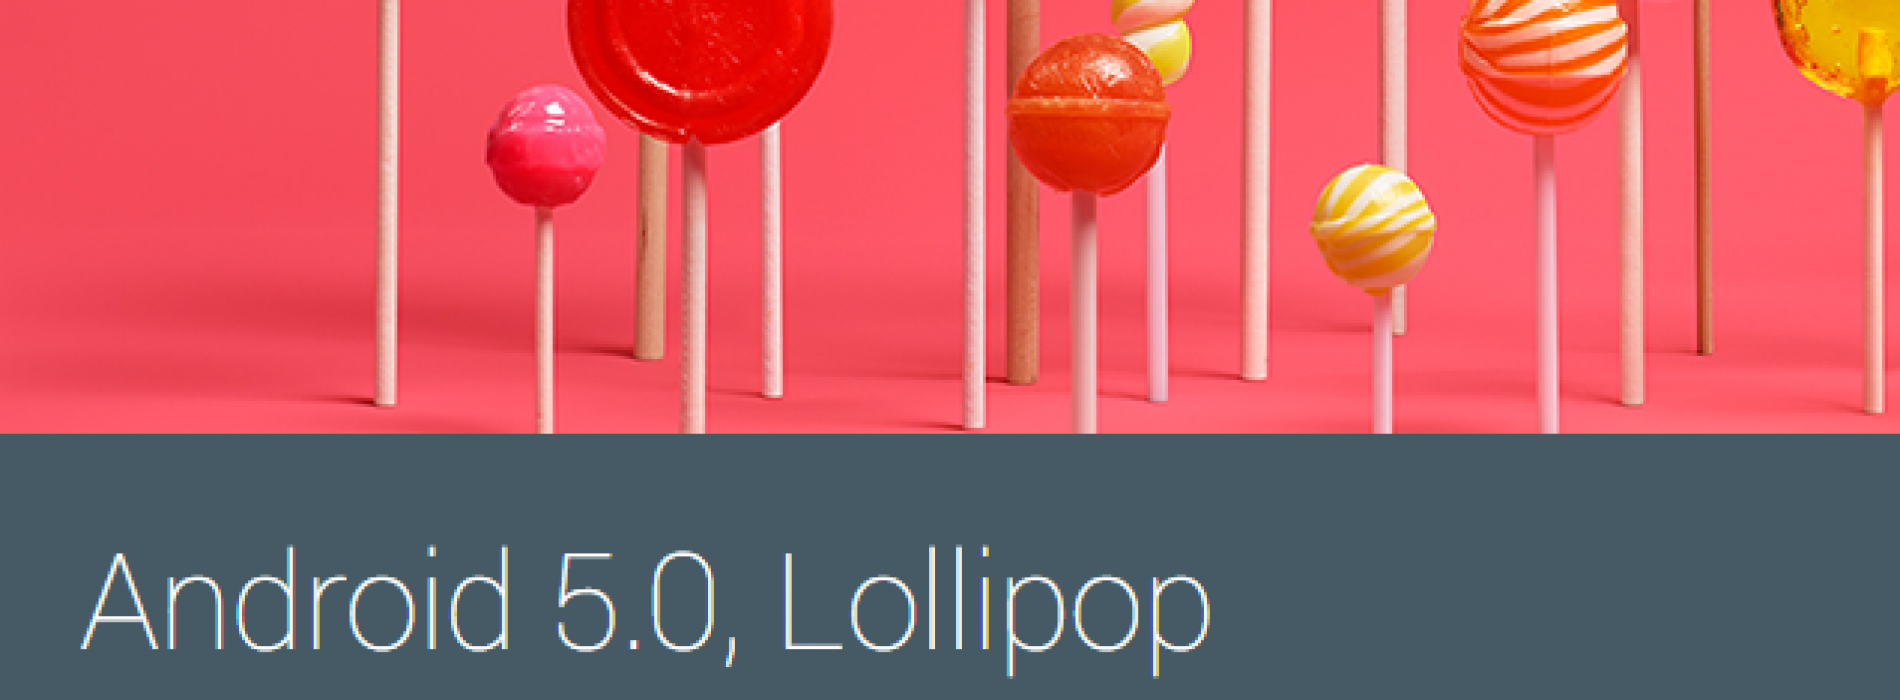 Lollipop Google App Apks Launcher Keyboard Wallpaper